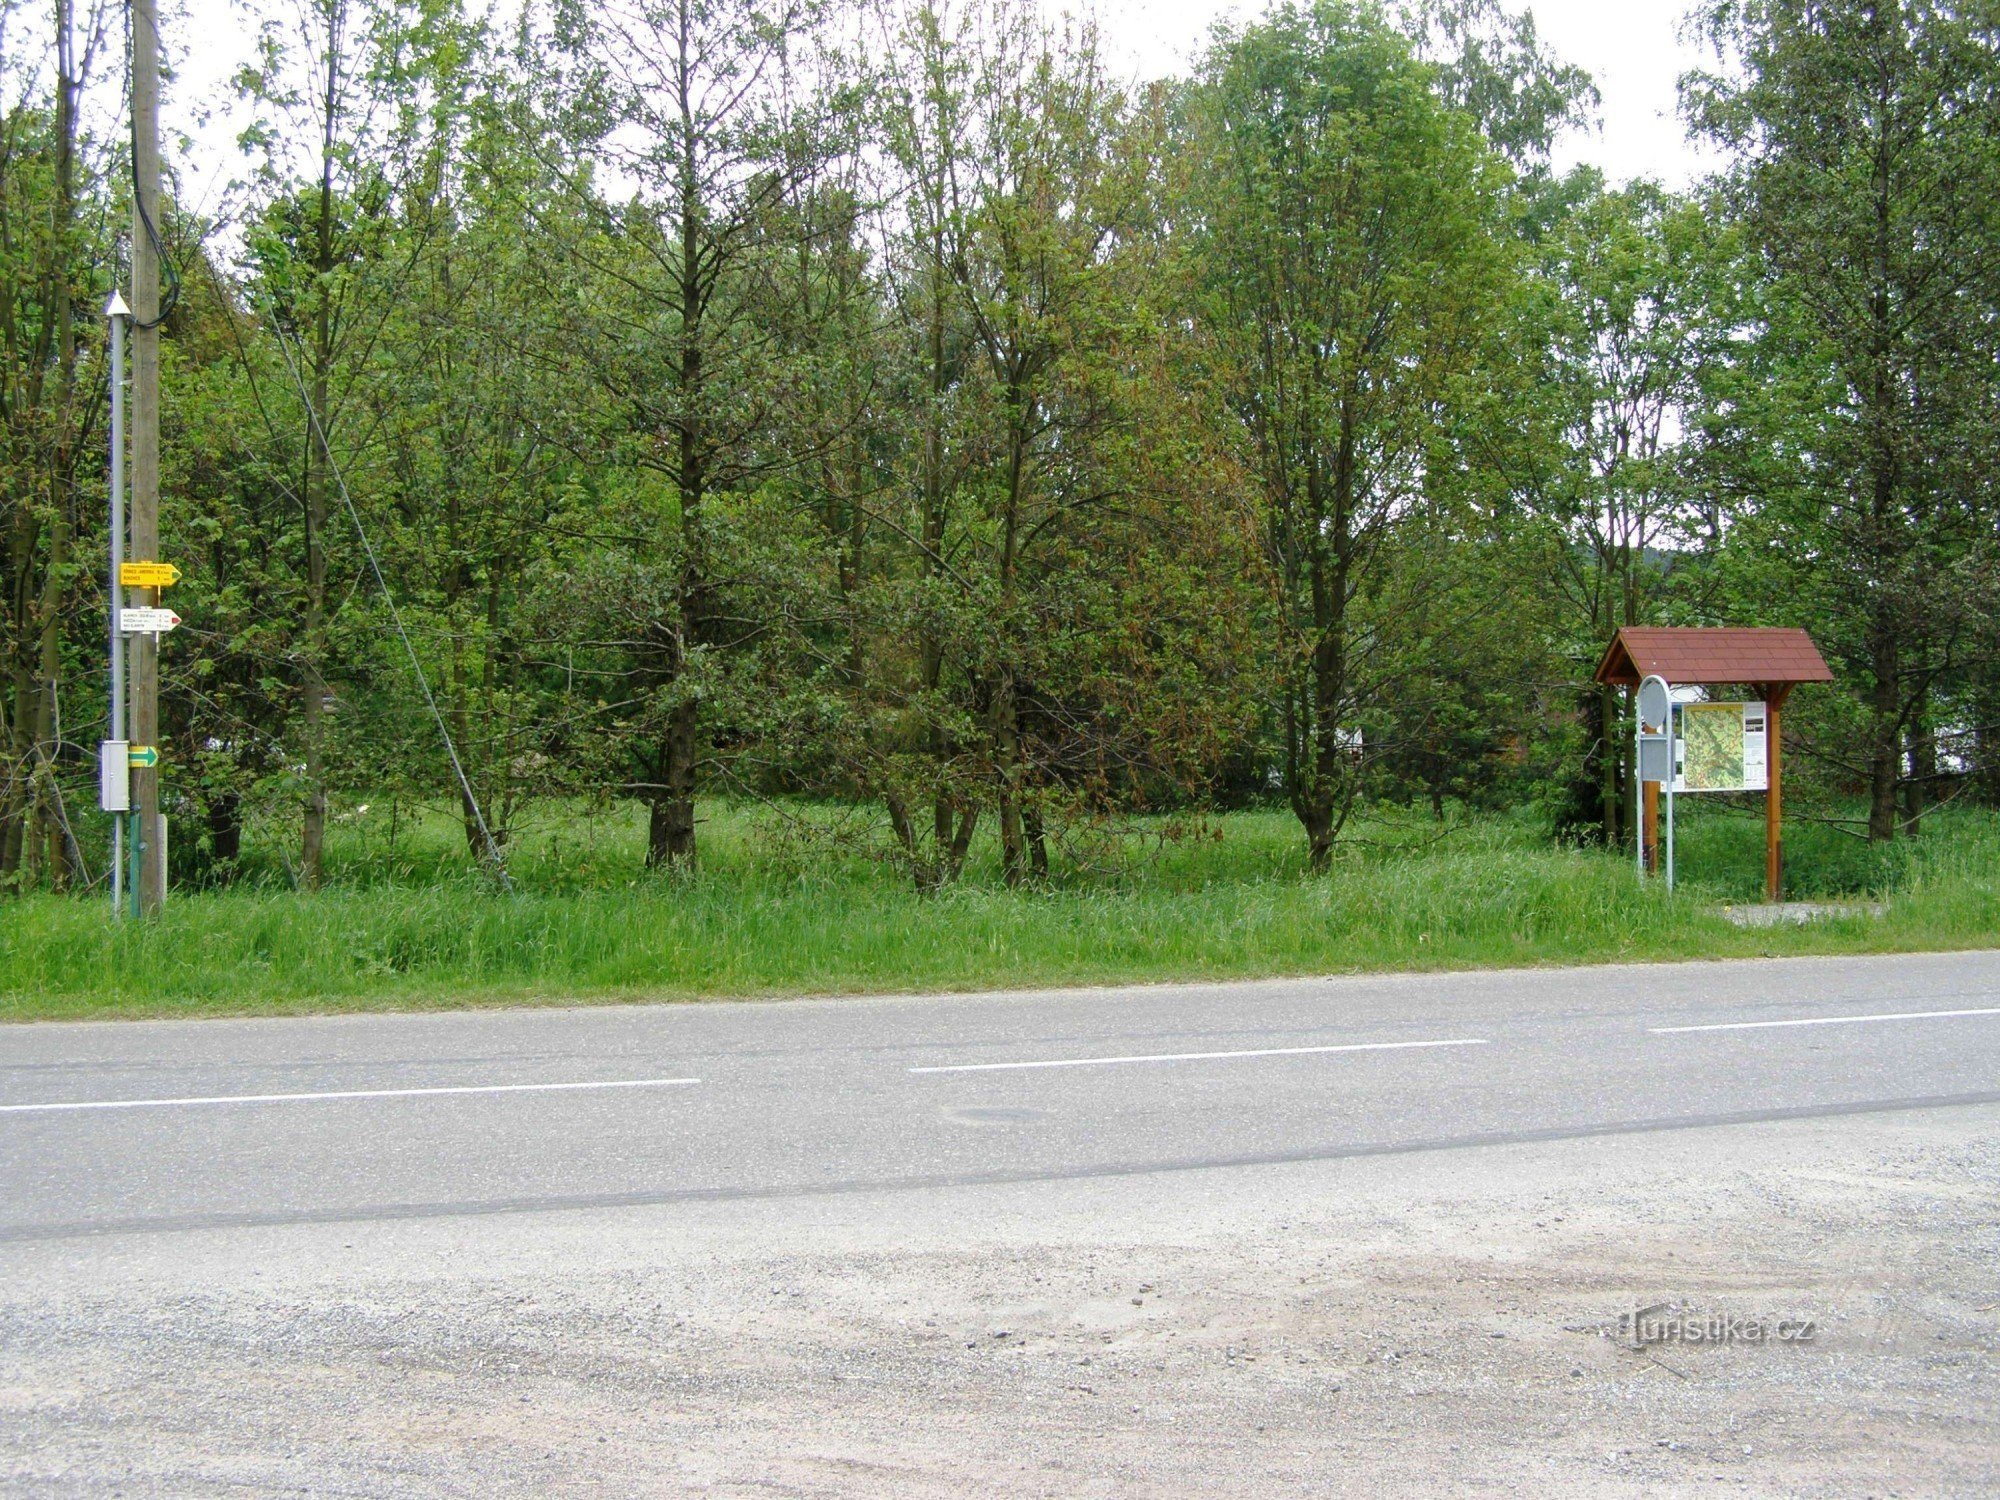 skrzyżowanie turystyczne Pěkov - autobus